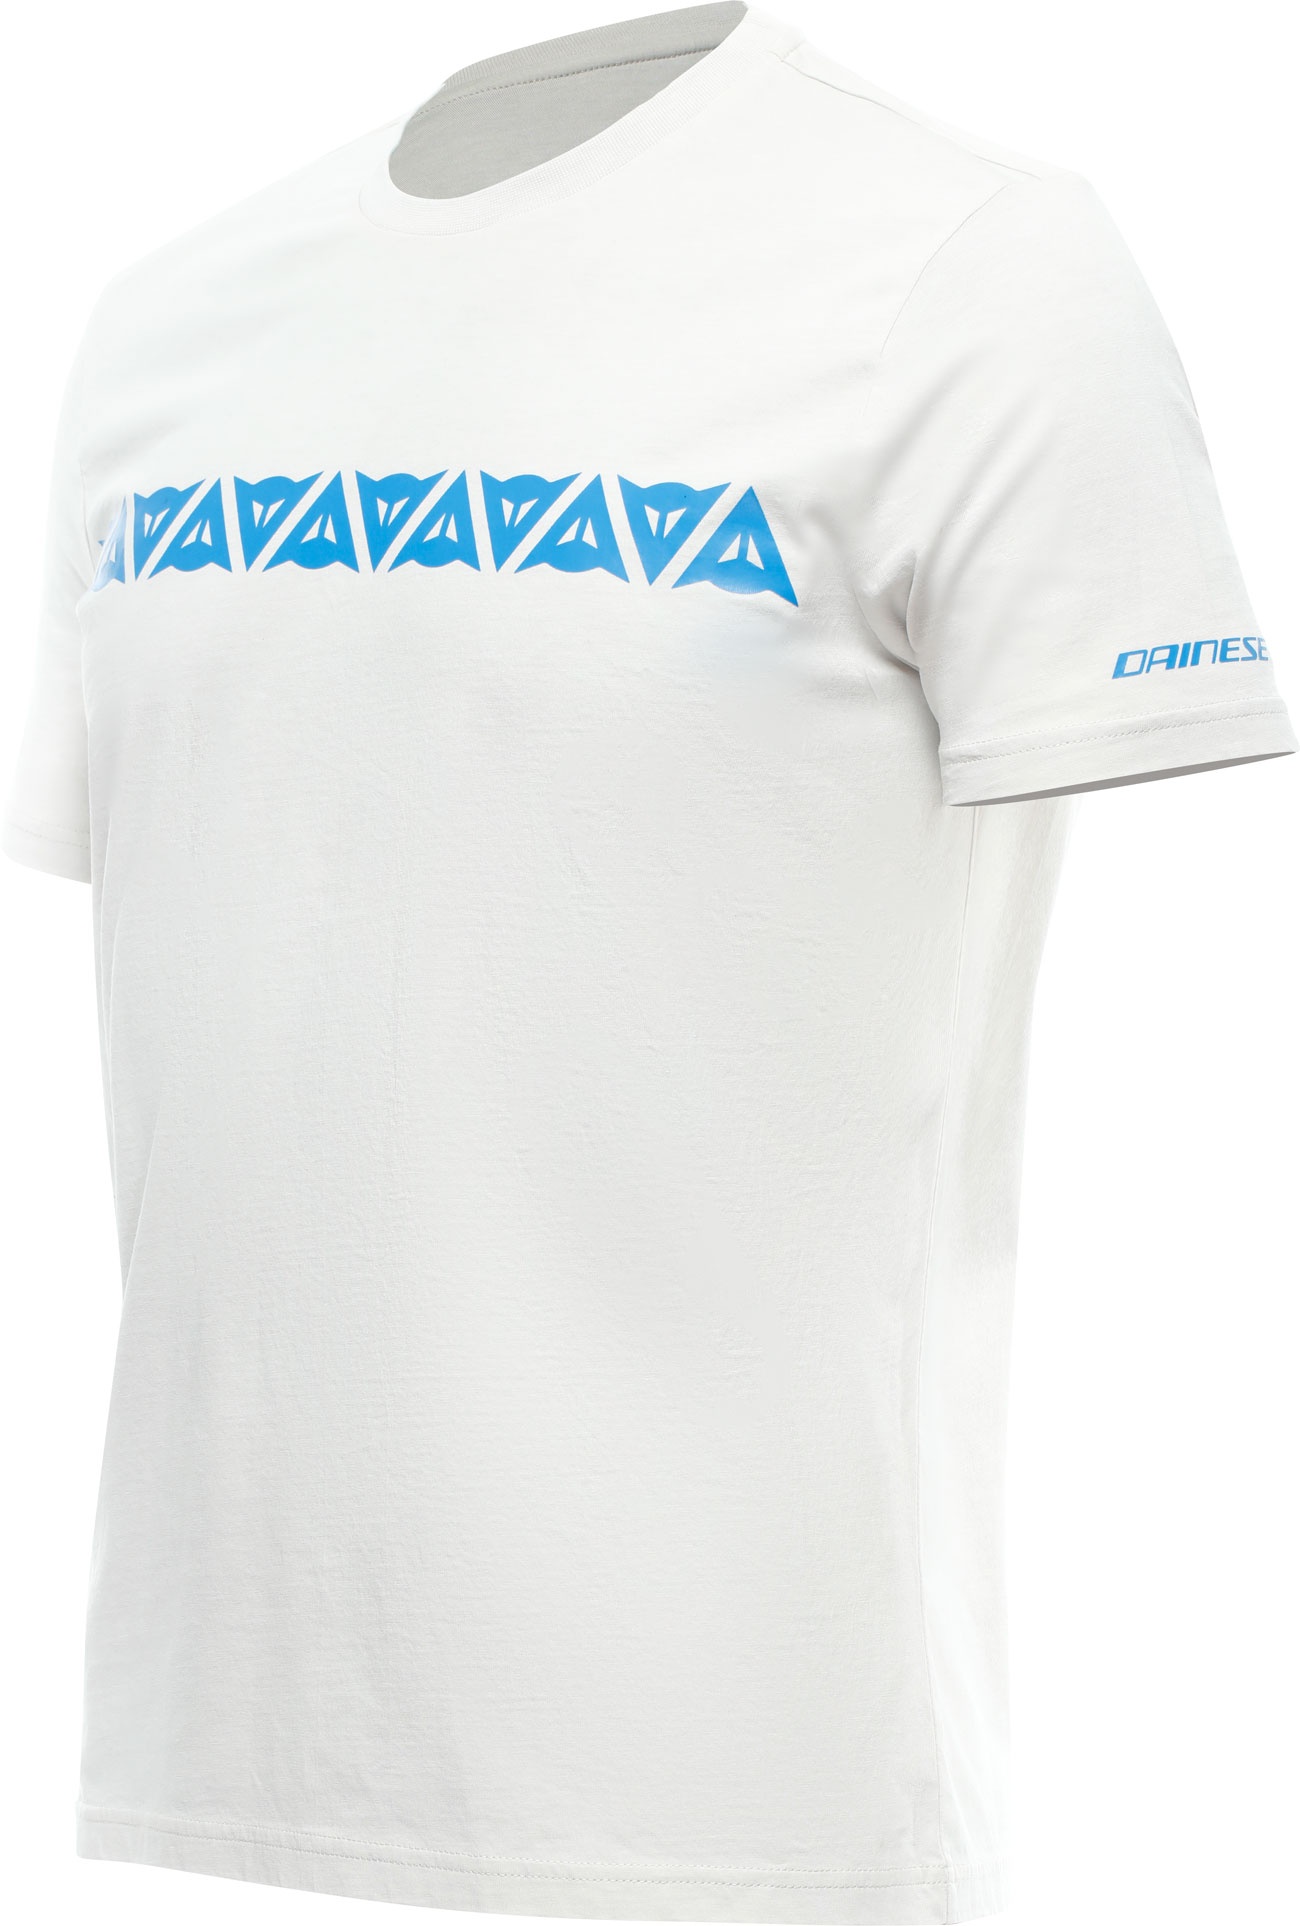 Dainese Stripes, t-shirt - Gris Clair/Bleu Clair - XXL